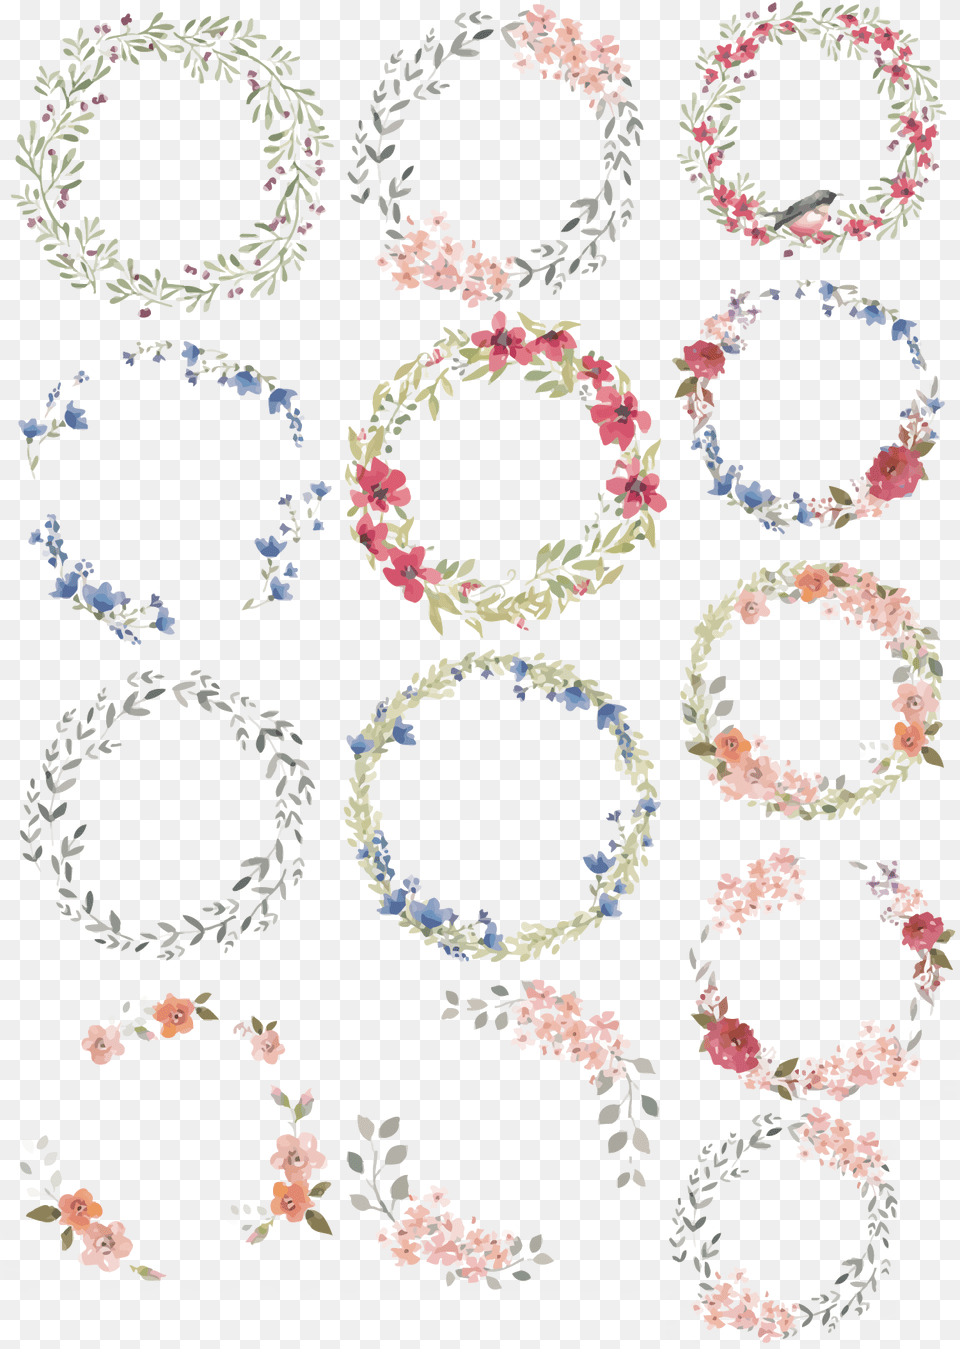 Anar Clipart Dibujo Corona De Flores, Graphics, Art, Pattern, Floral Design Png Image